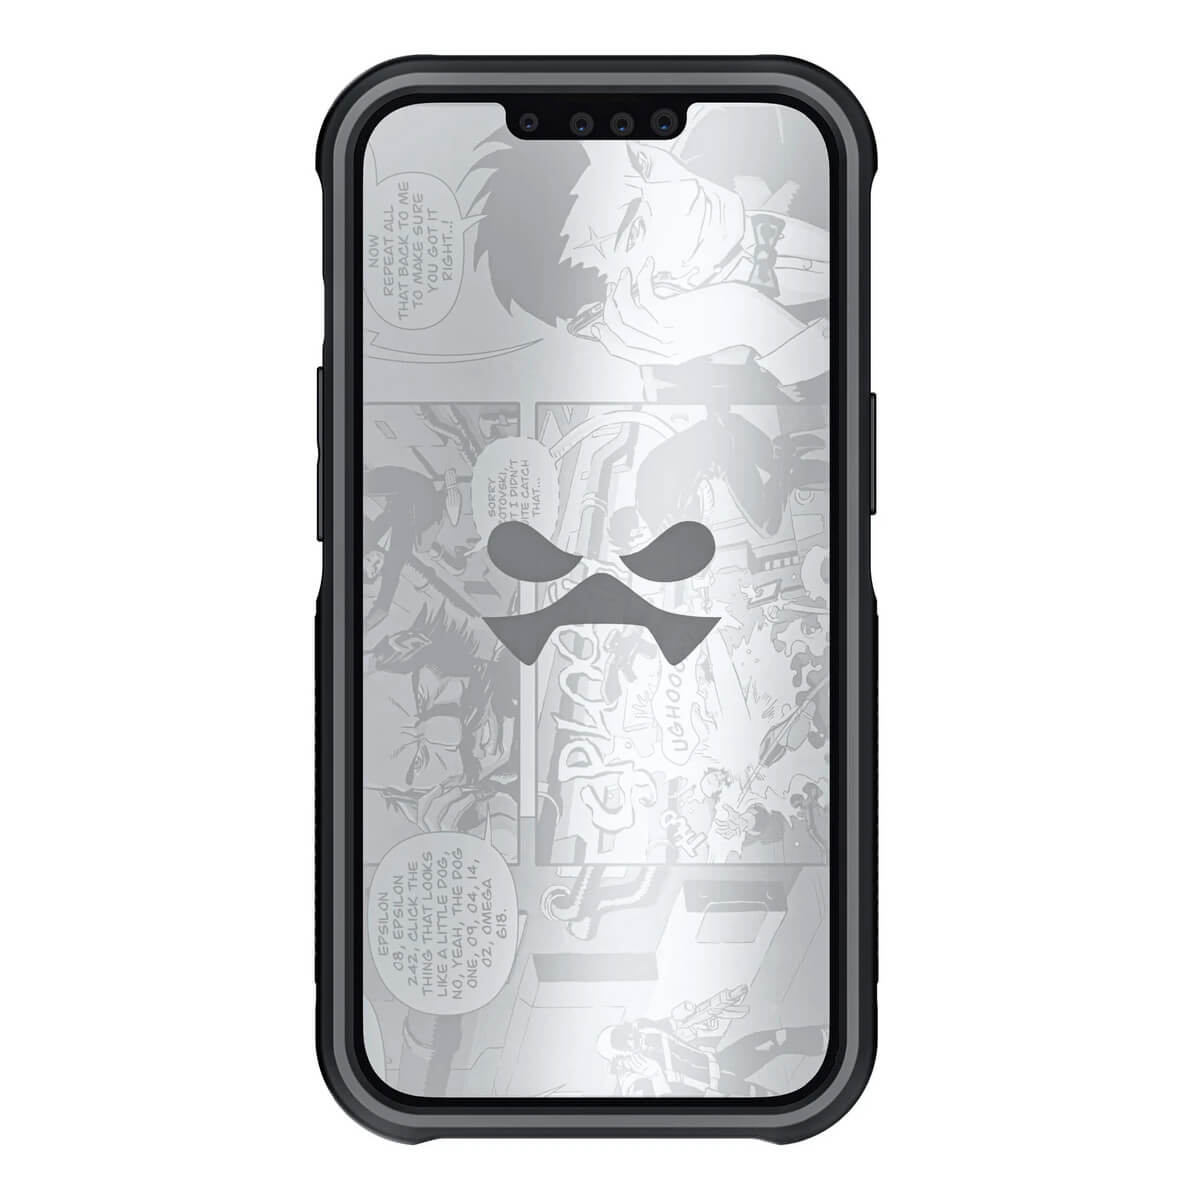 Ghostek iPhone 13 Pro Case Atomic Slim w/ Magsafe Black